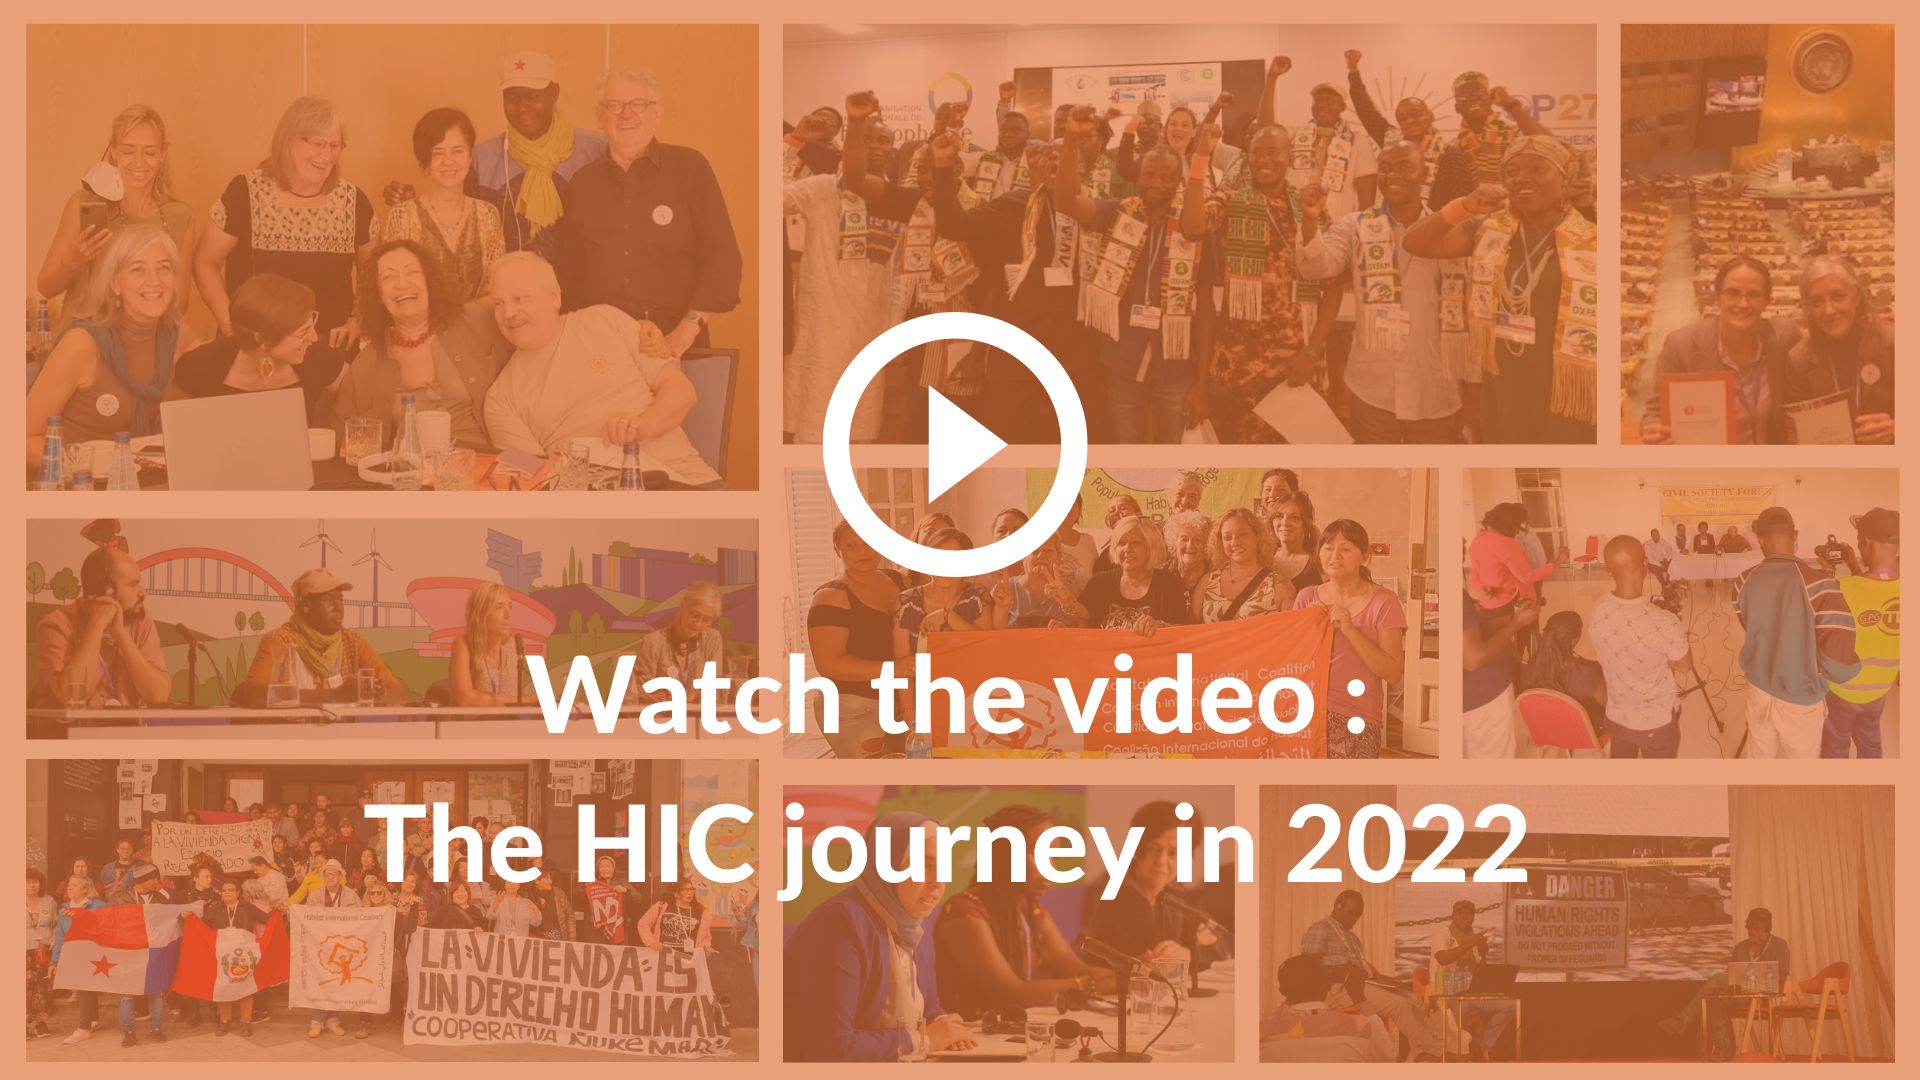 The HIC journey 2022